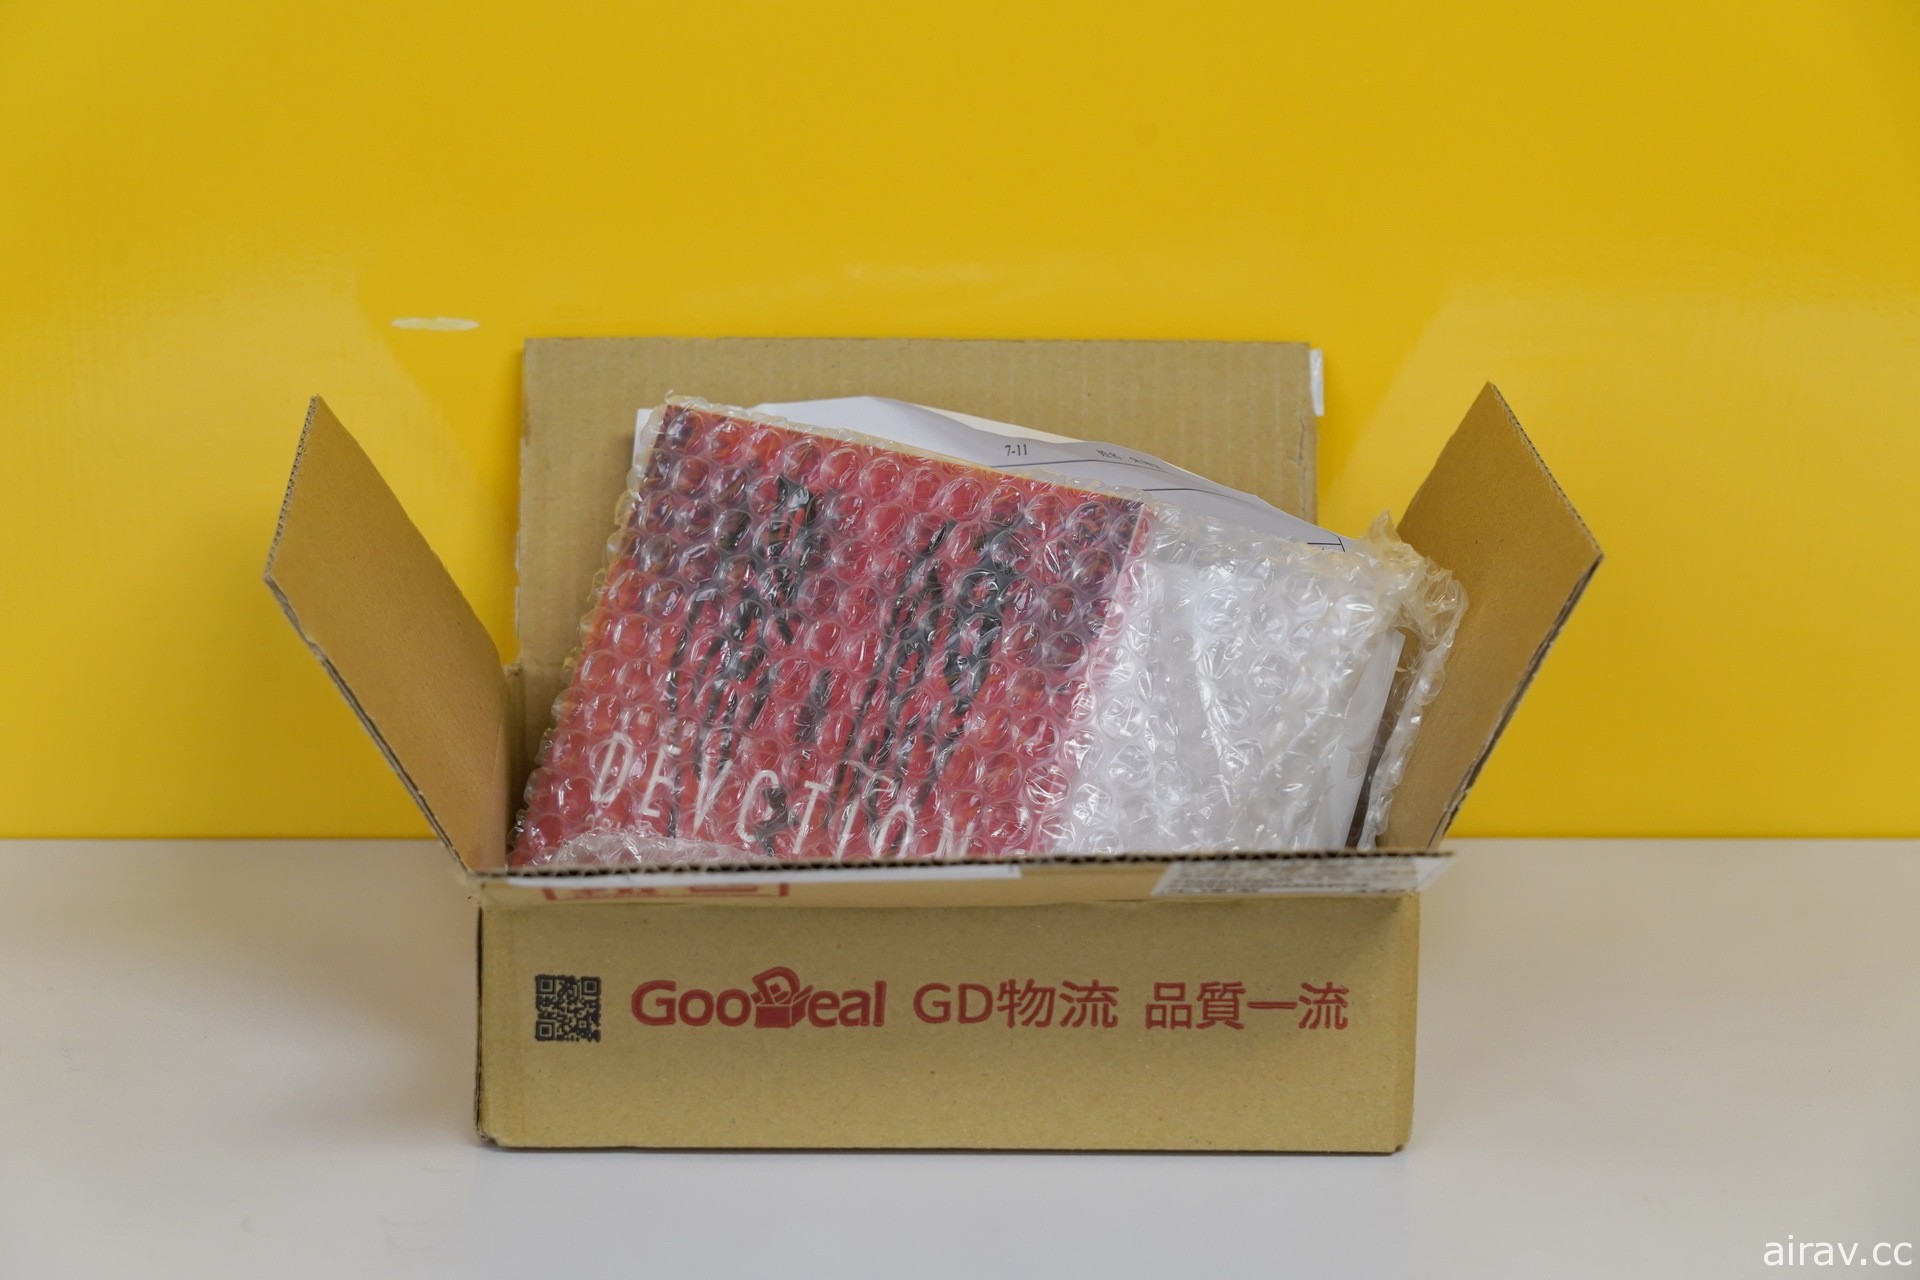 【開箱】一窺《還願》台灣限定版與原聲帶實際樣貌 回到 1980 年代的復古錄影帶外盒